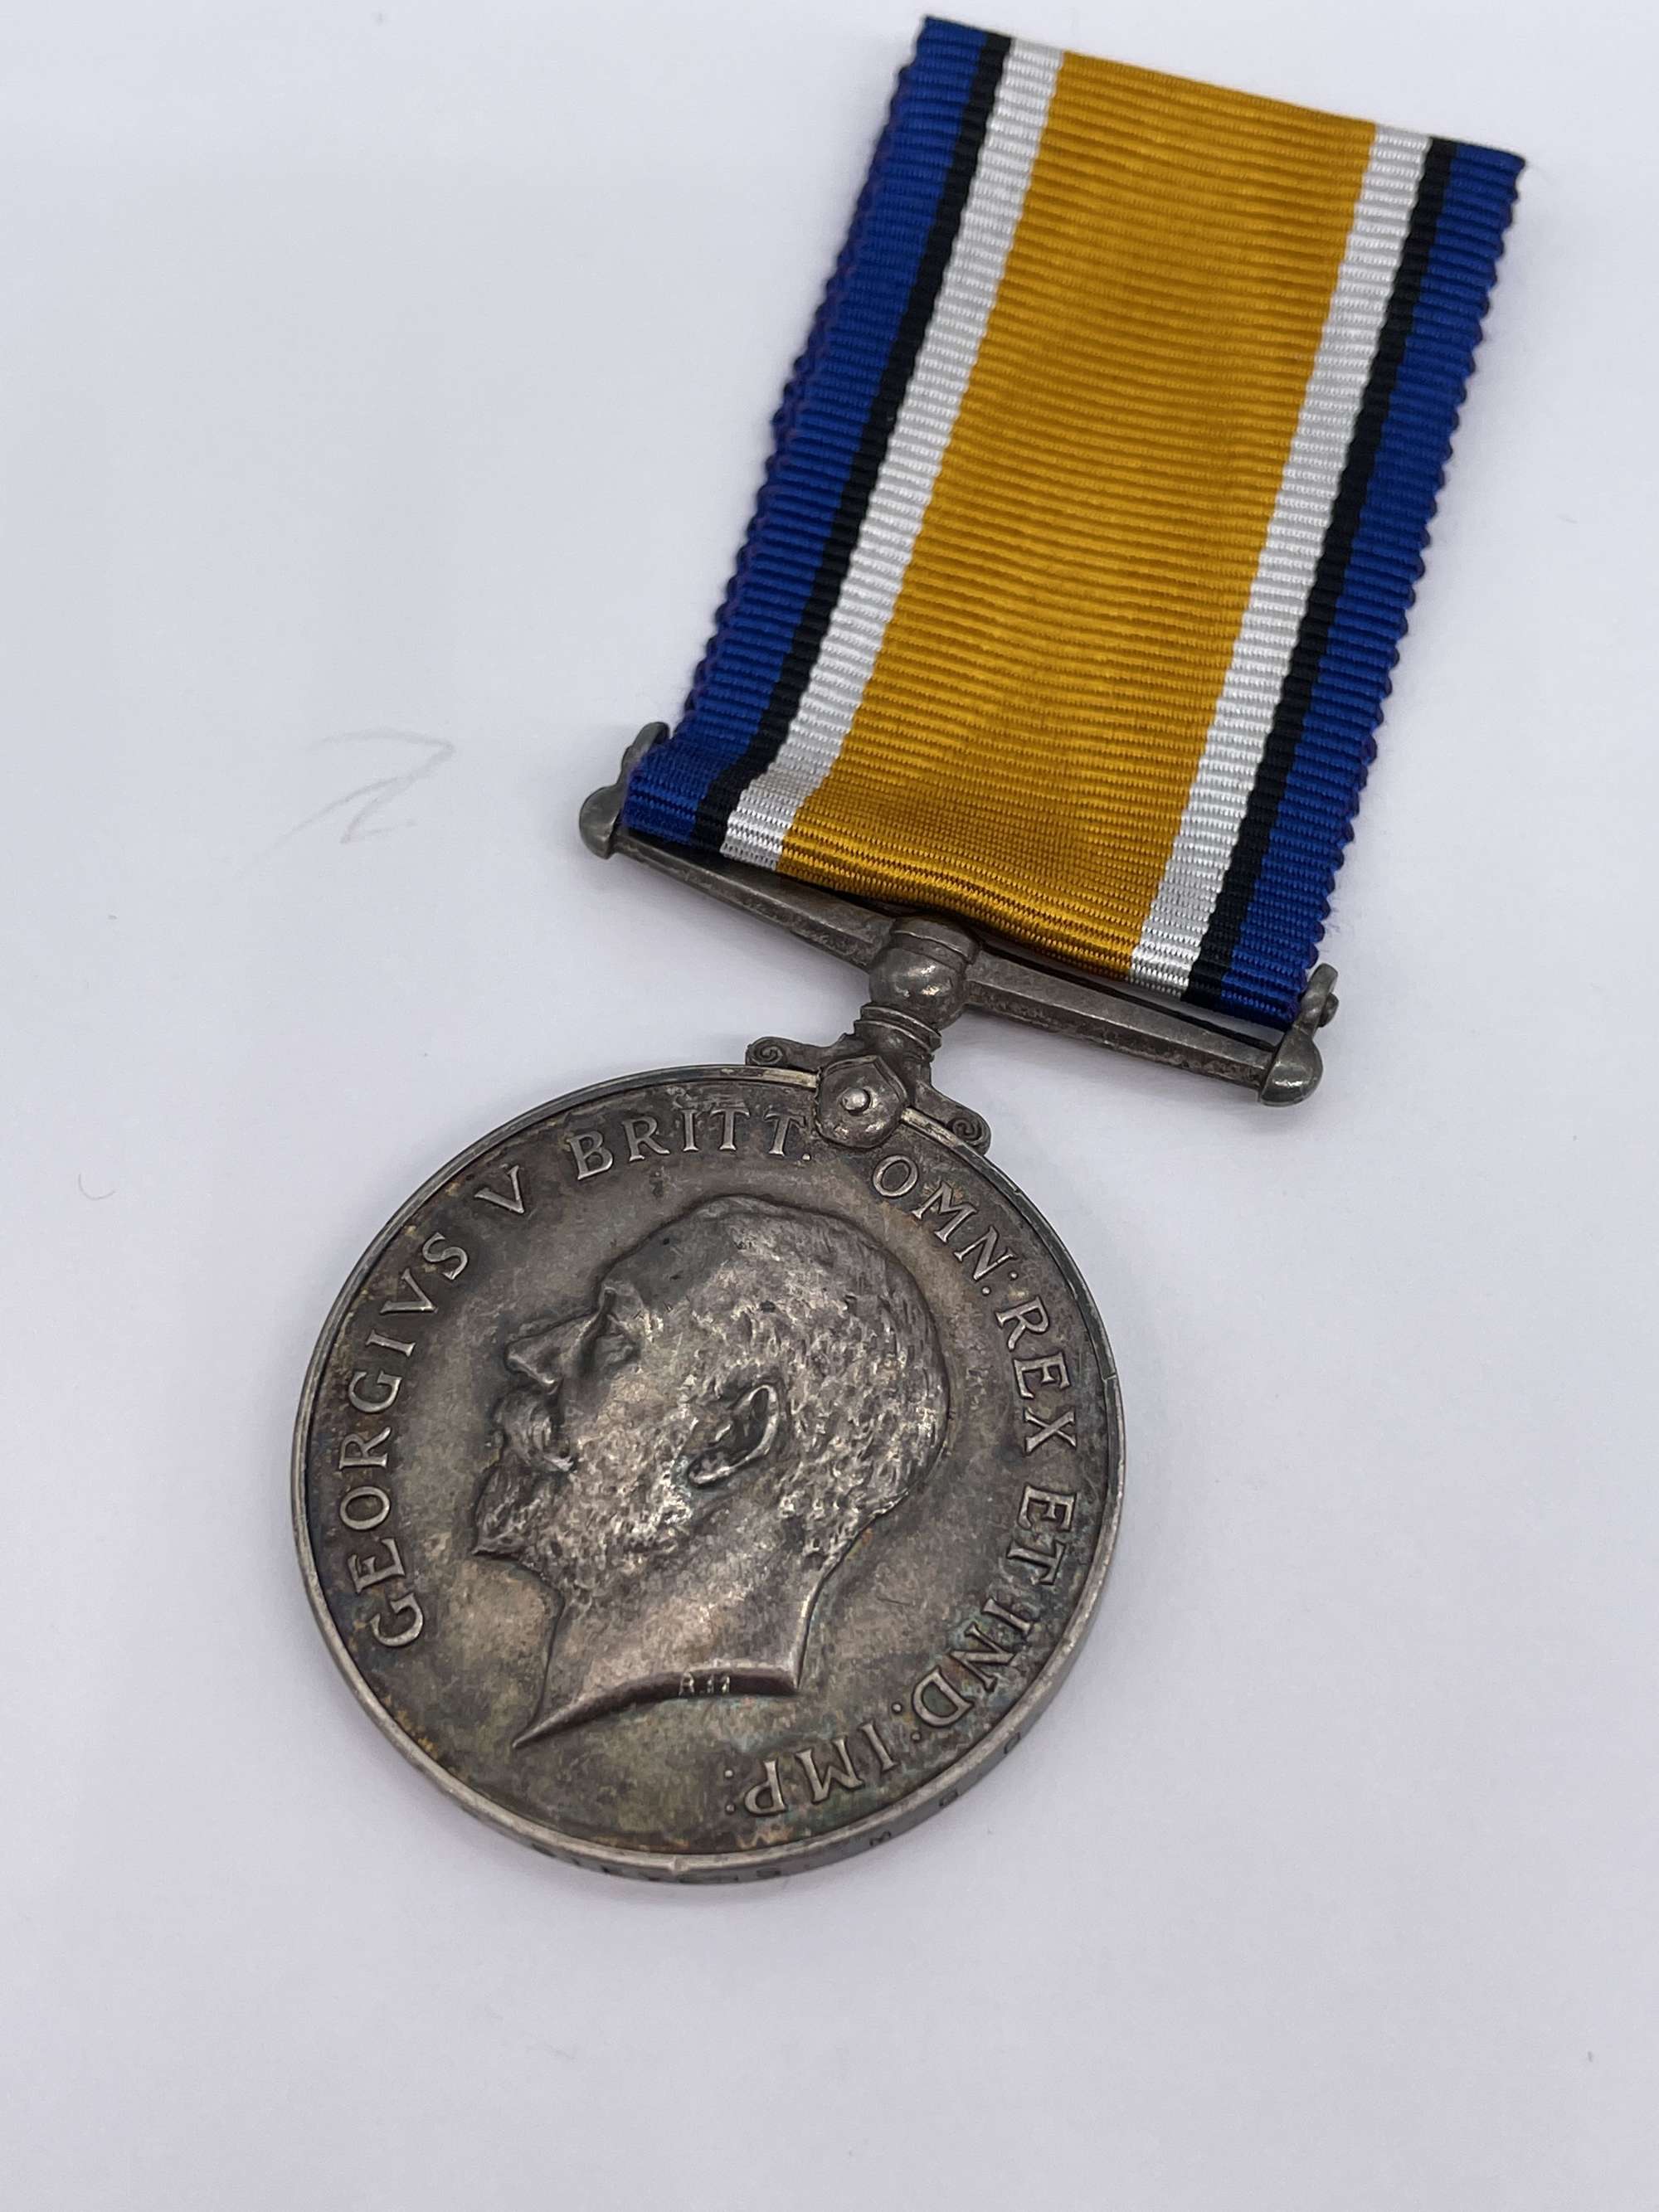 Original World War One British War Medal, Pte Stevens, Machine Gun Corps, Killed in Action